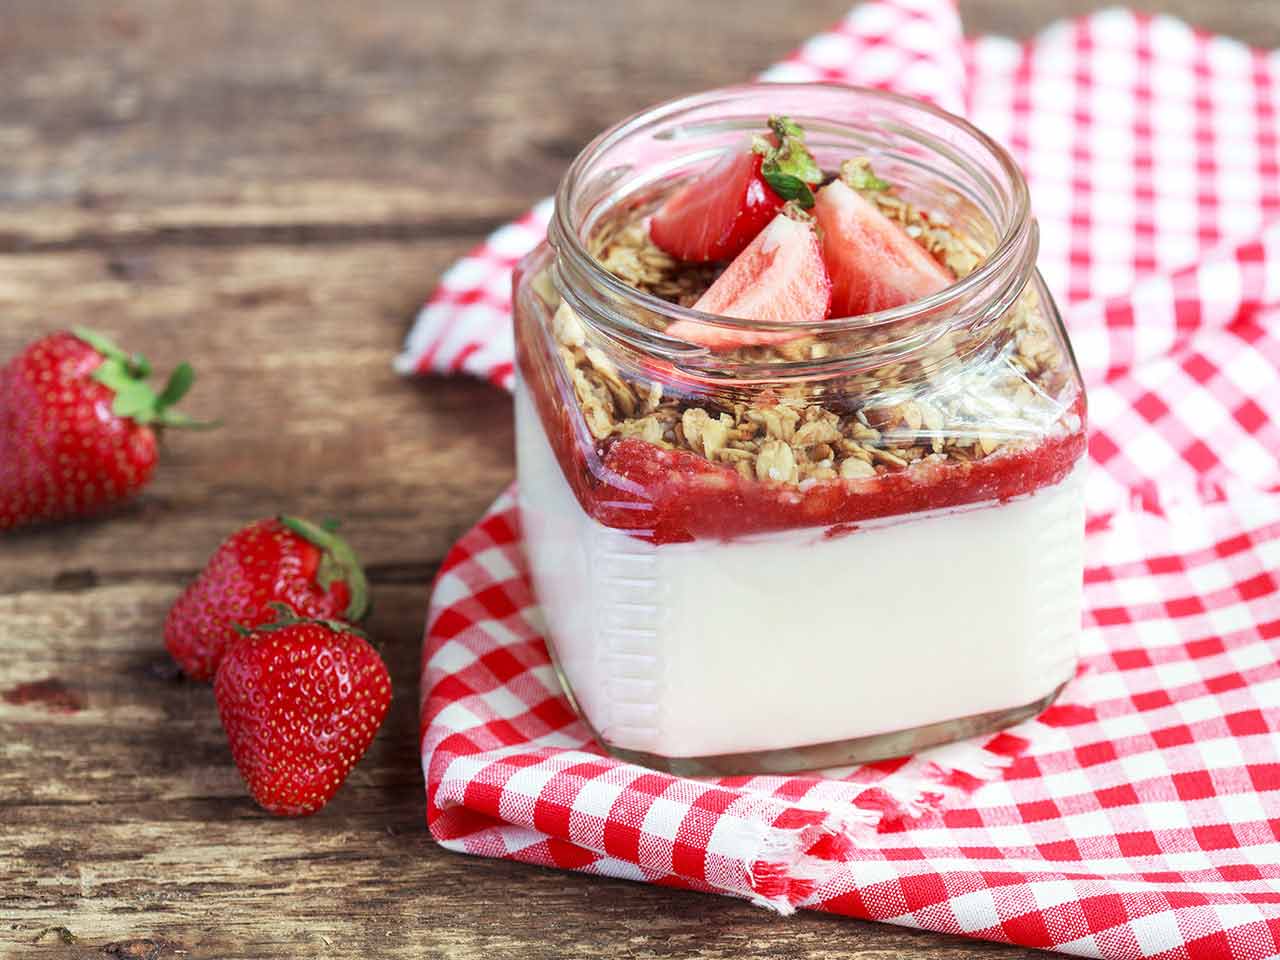 Homemade strawberries and yoghurt pot